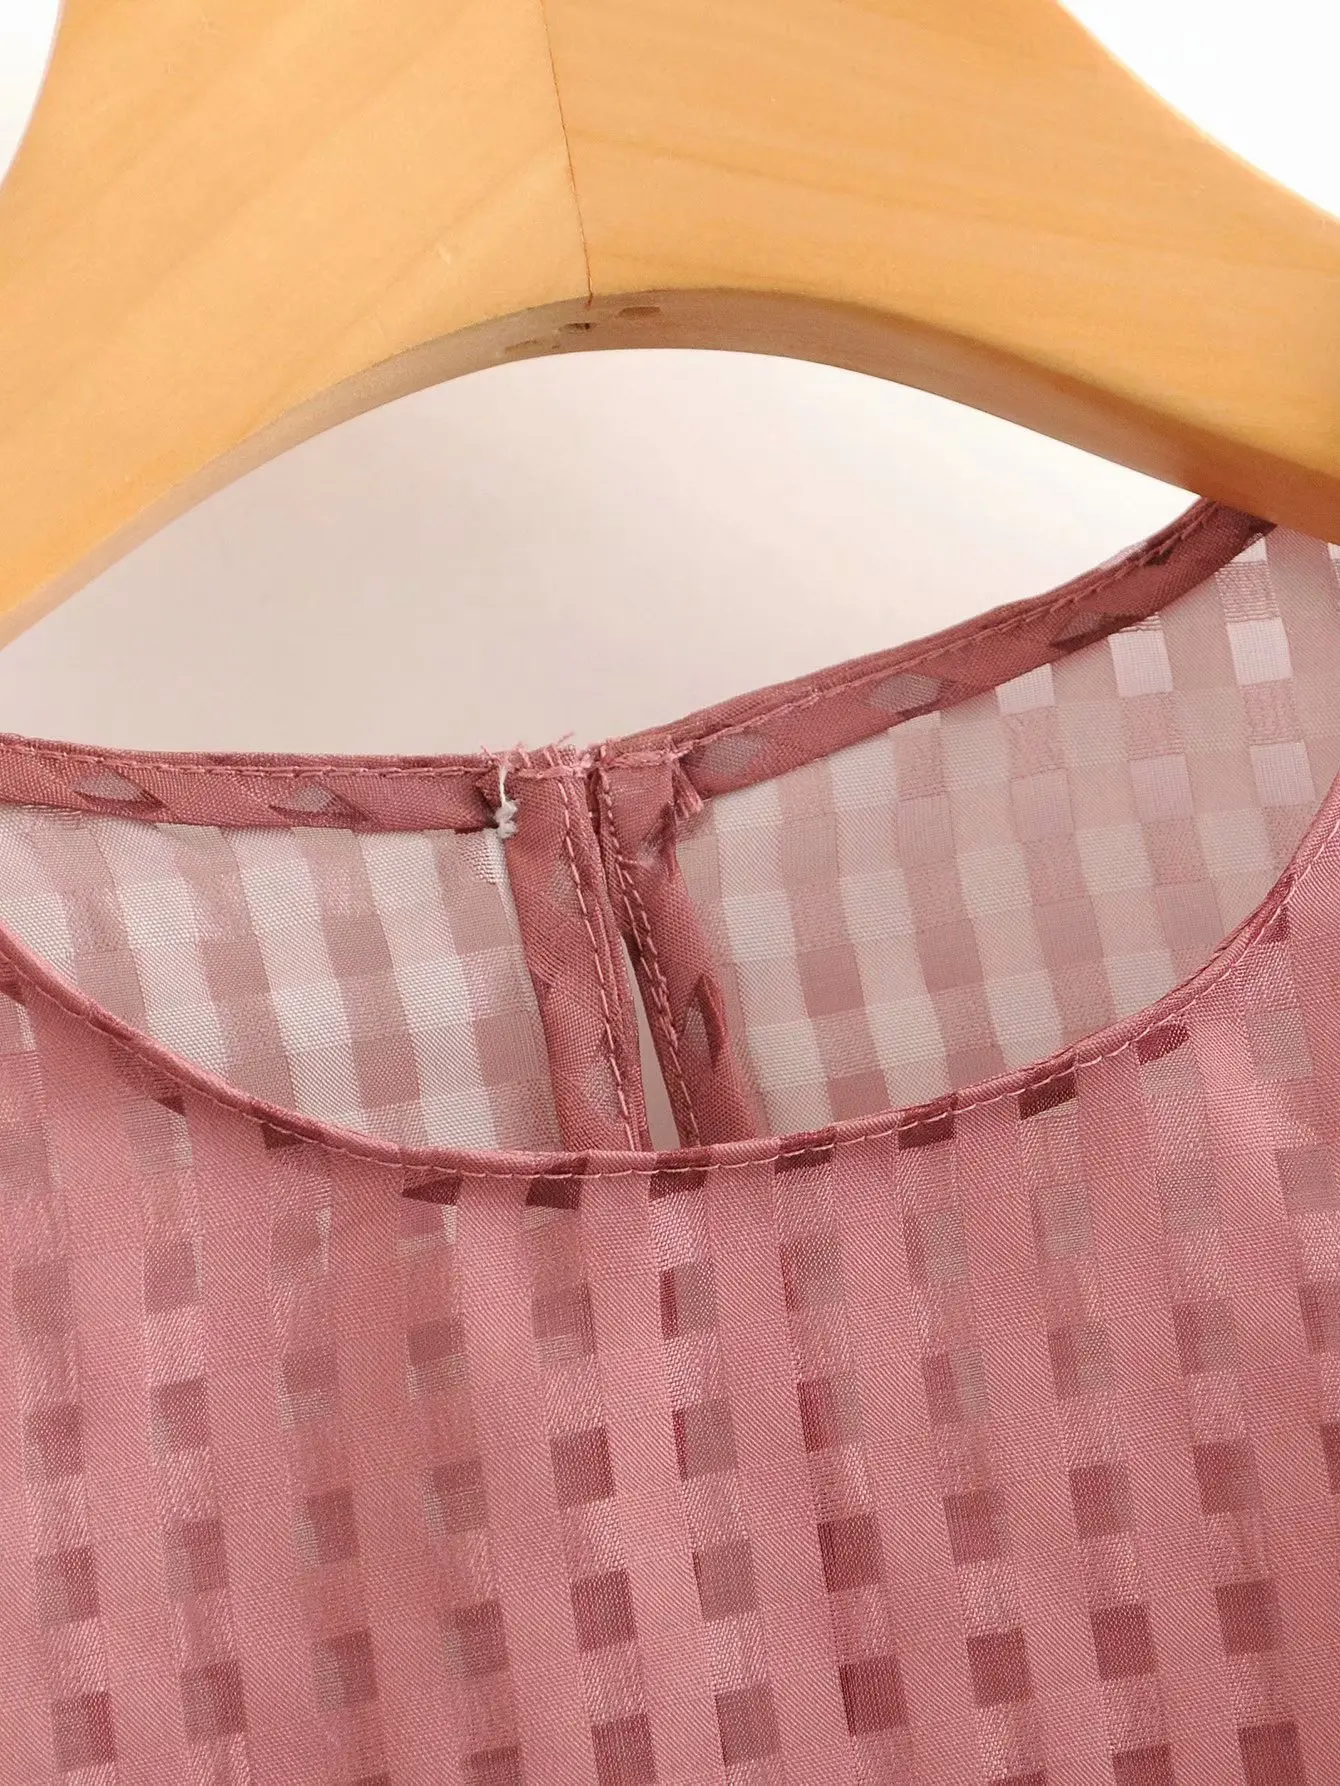 Женская элегантная прозрачная блузка с круглым вырезом, в клетку, органзы, рубашки, женские блузы с рукавом-фонариком, плиссированные Рубашки, Топы LS6178